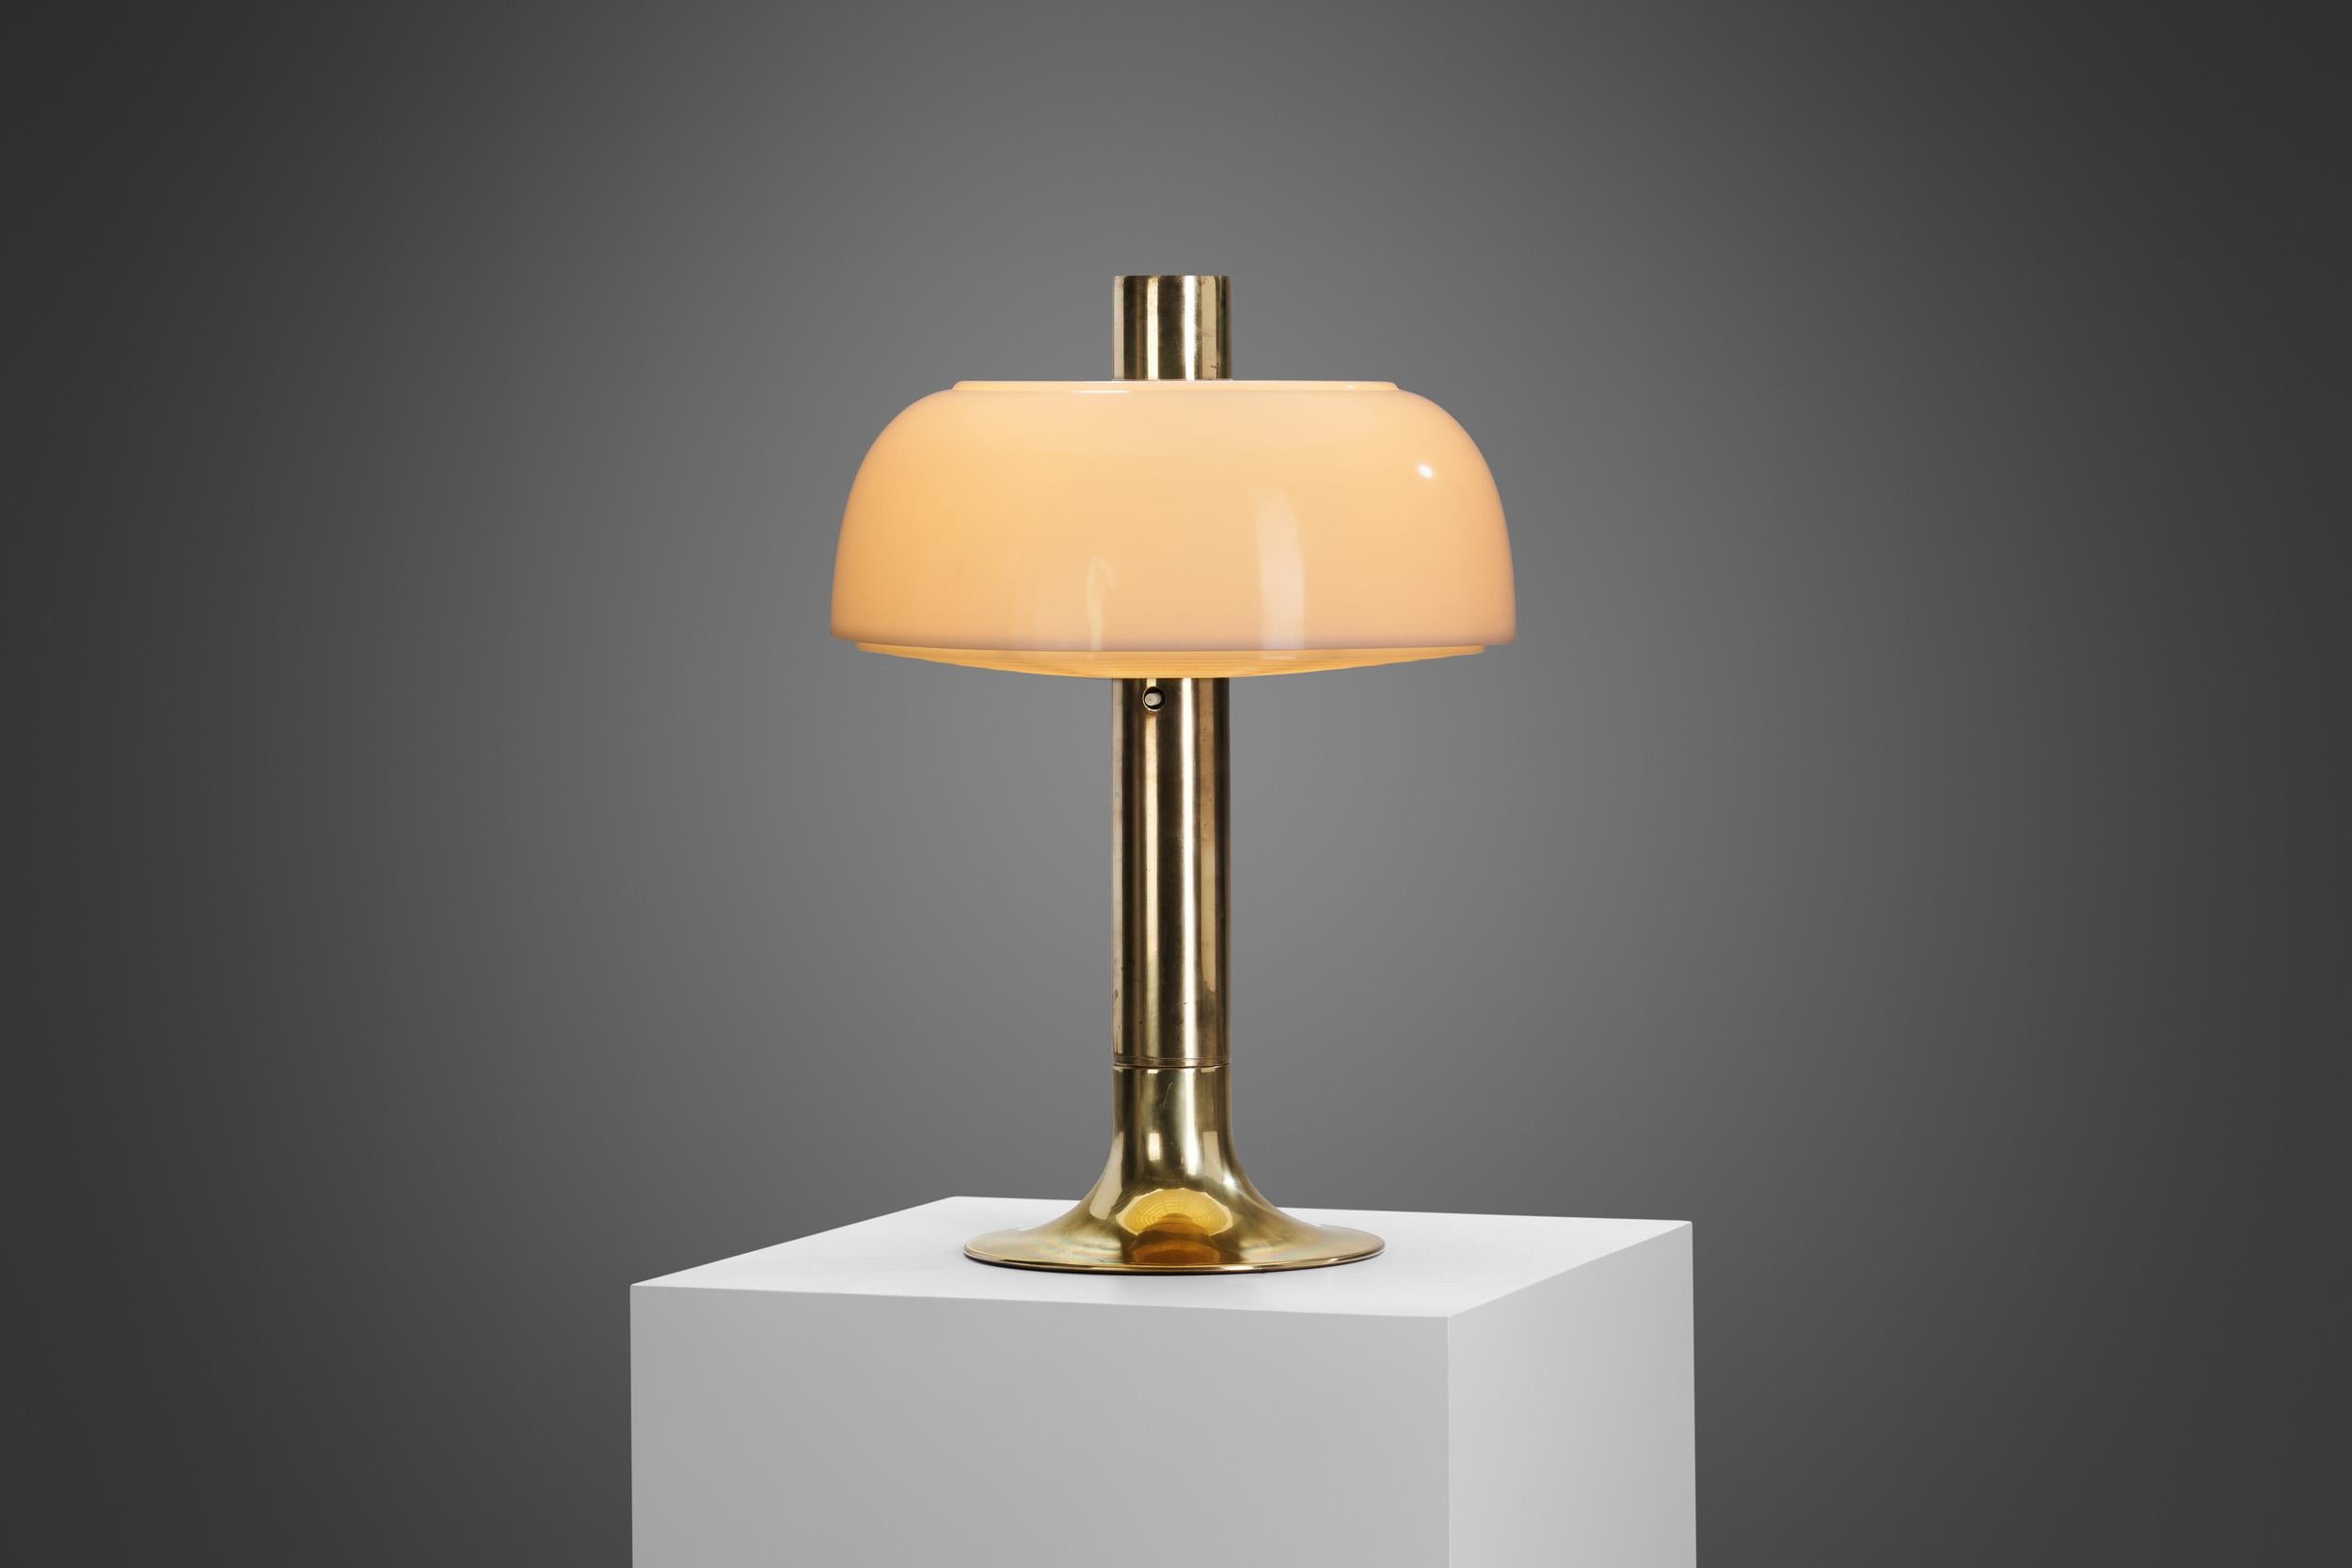 Inspirée par la lampe champignon organique, cette lampe de table modèle 